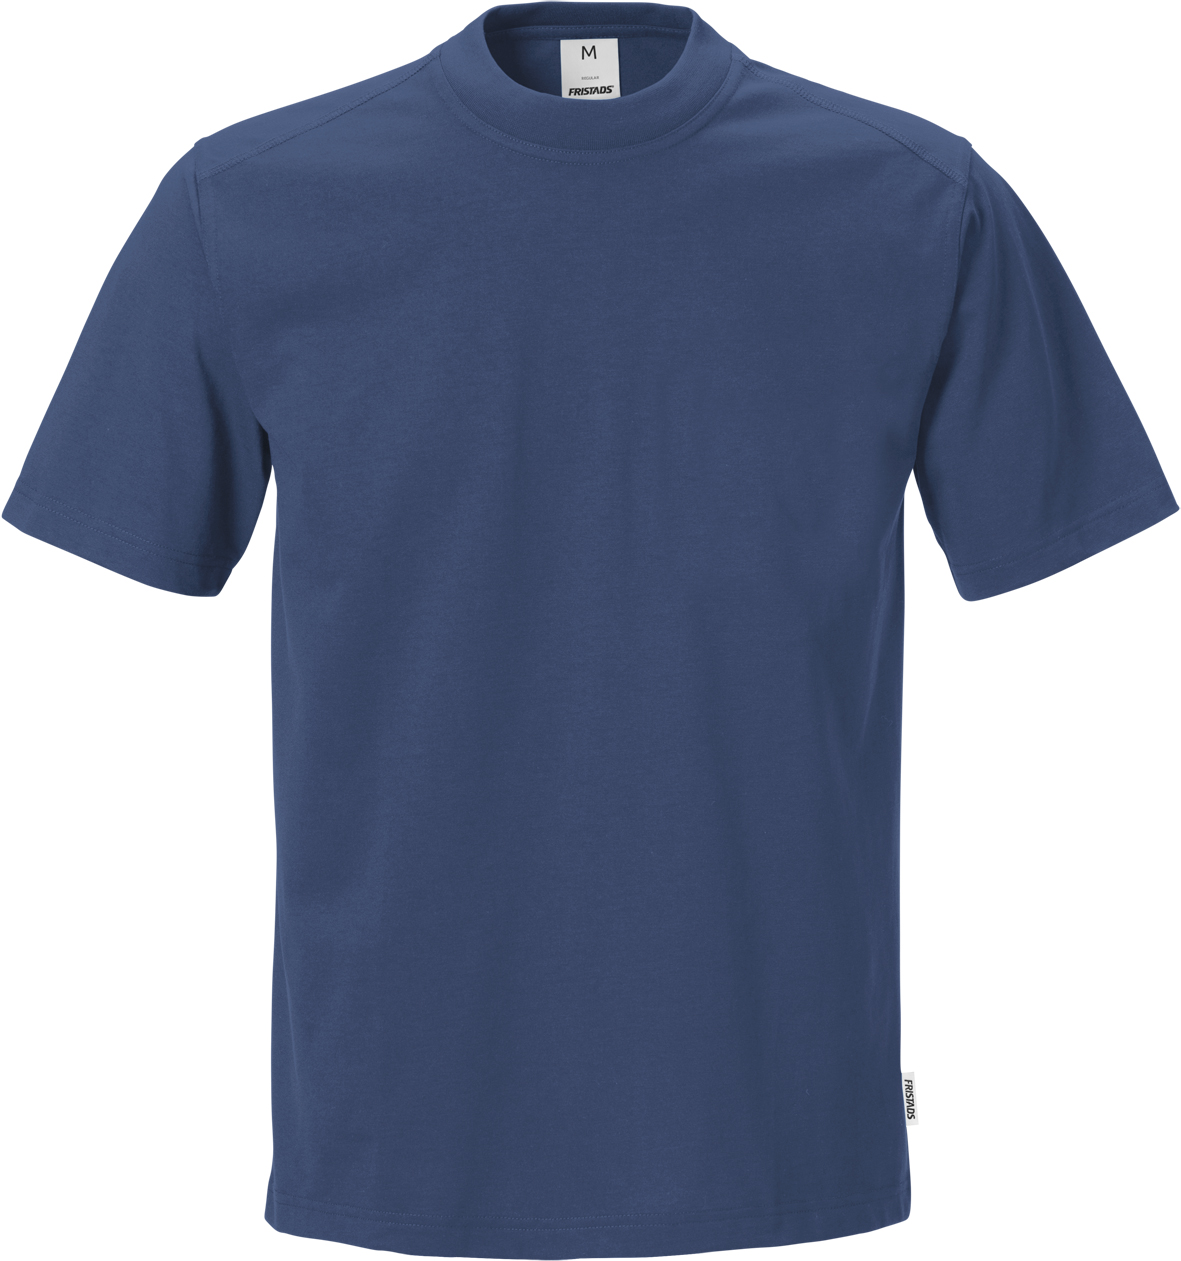 KANSAS®-T-Shirt, Gr. 3XL Dunkelblau 540, Typ 7603 TM - erhältlich bei ✌ HUG Technik ✓